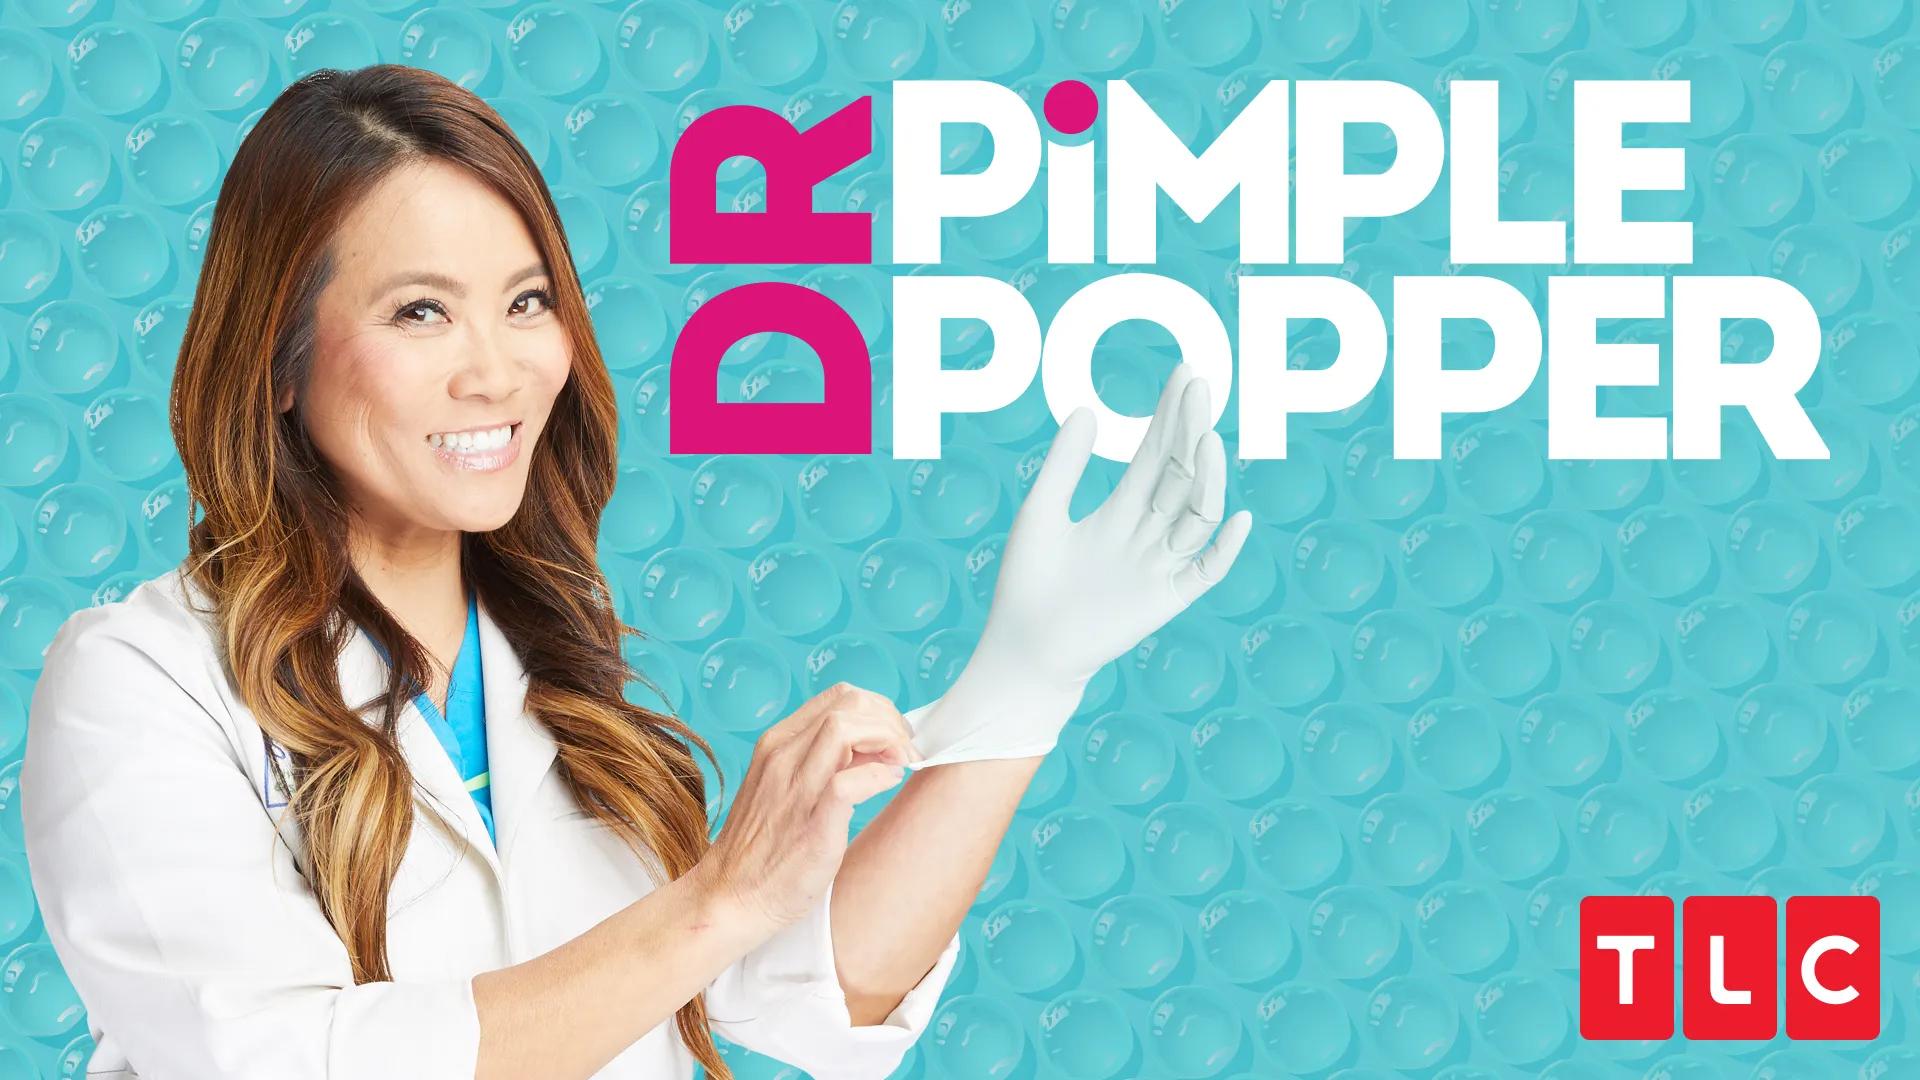 Dr. Pimple Popper